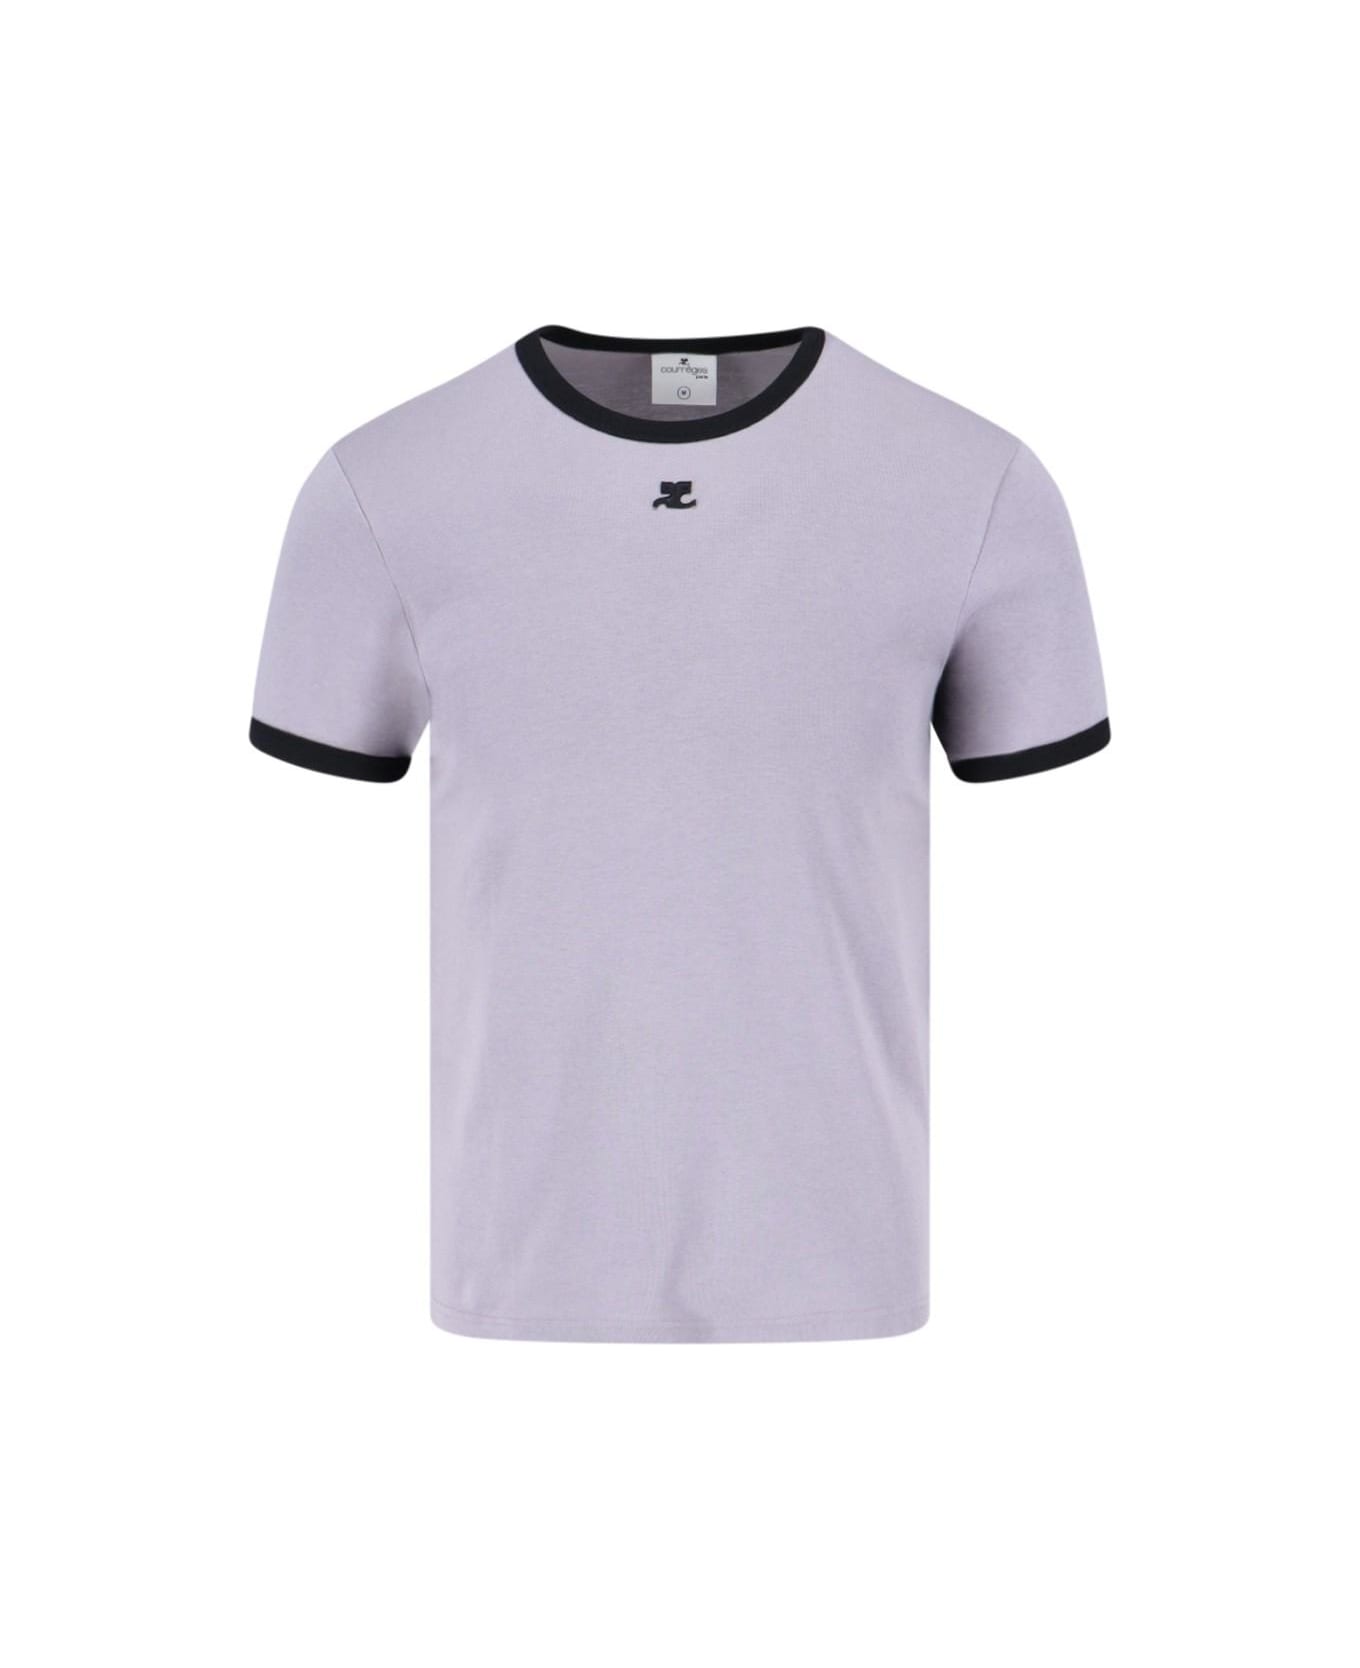 Courrèges 'contraste' T-shirt - Smocked Grey Black